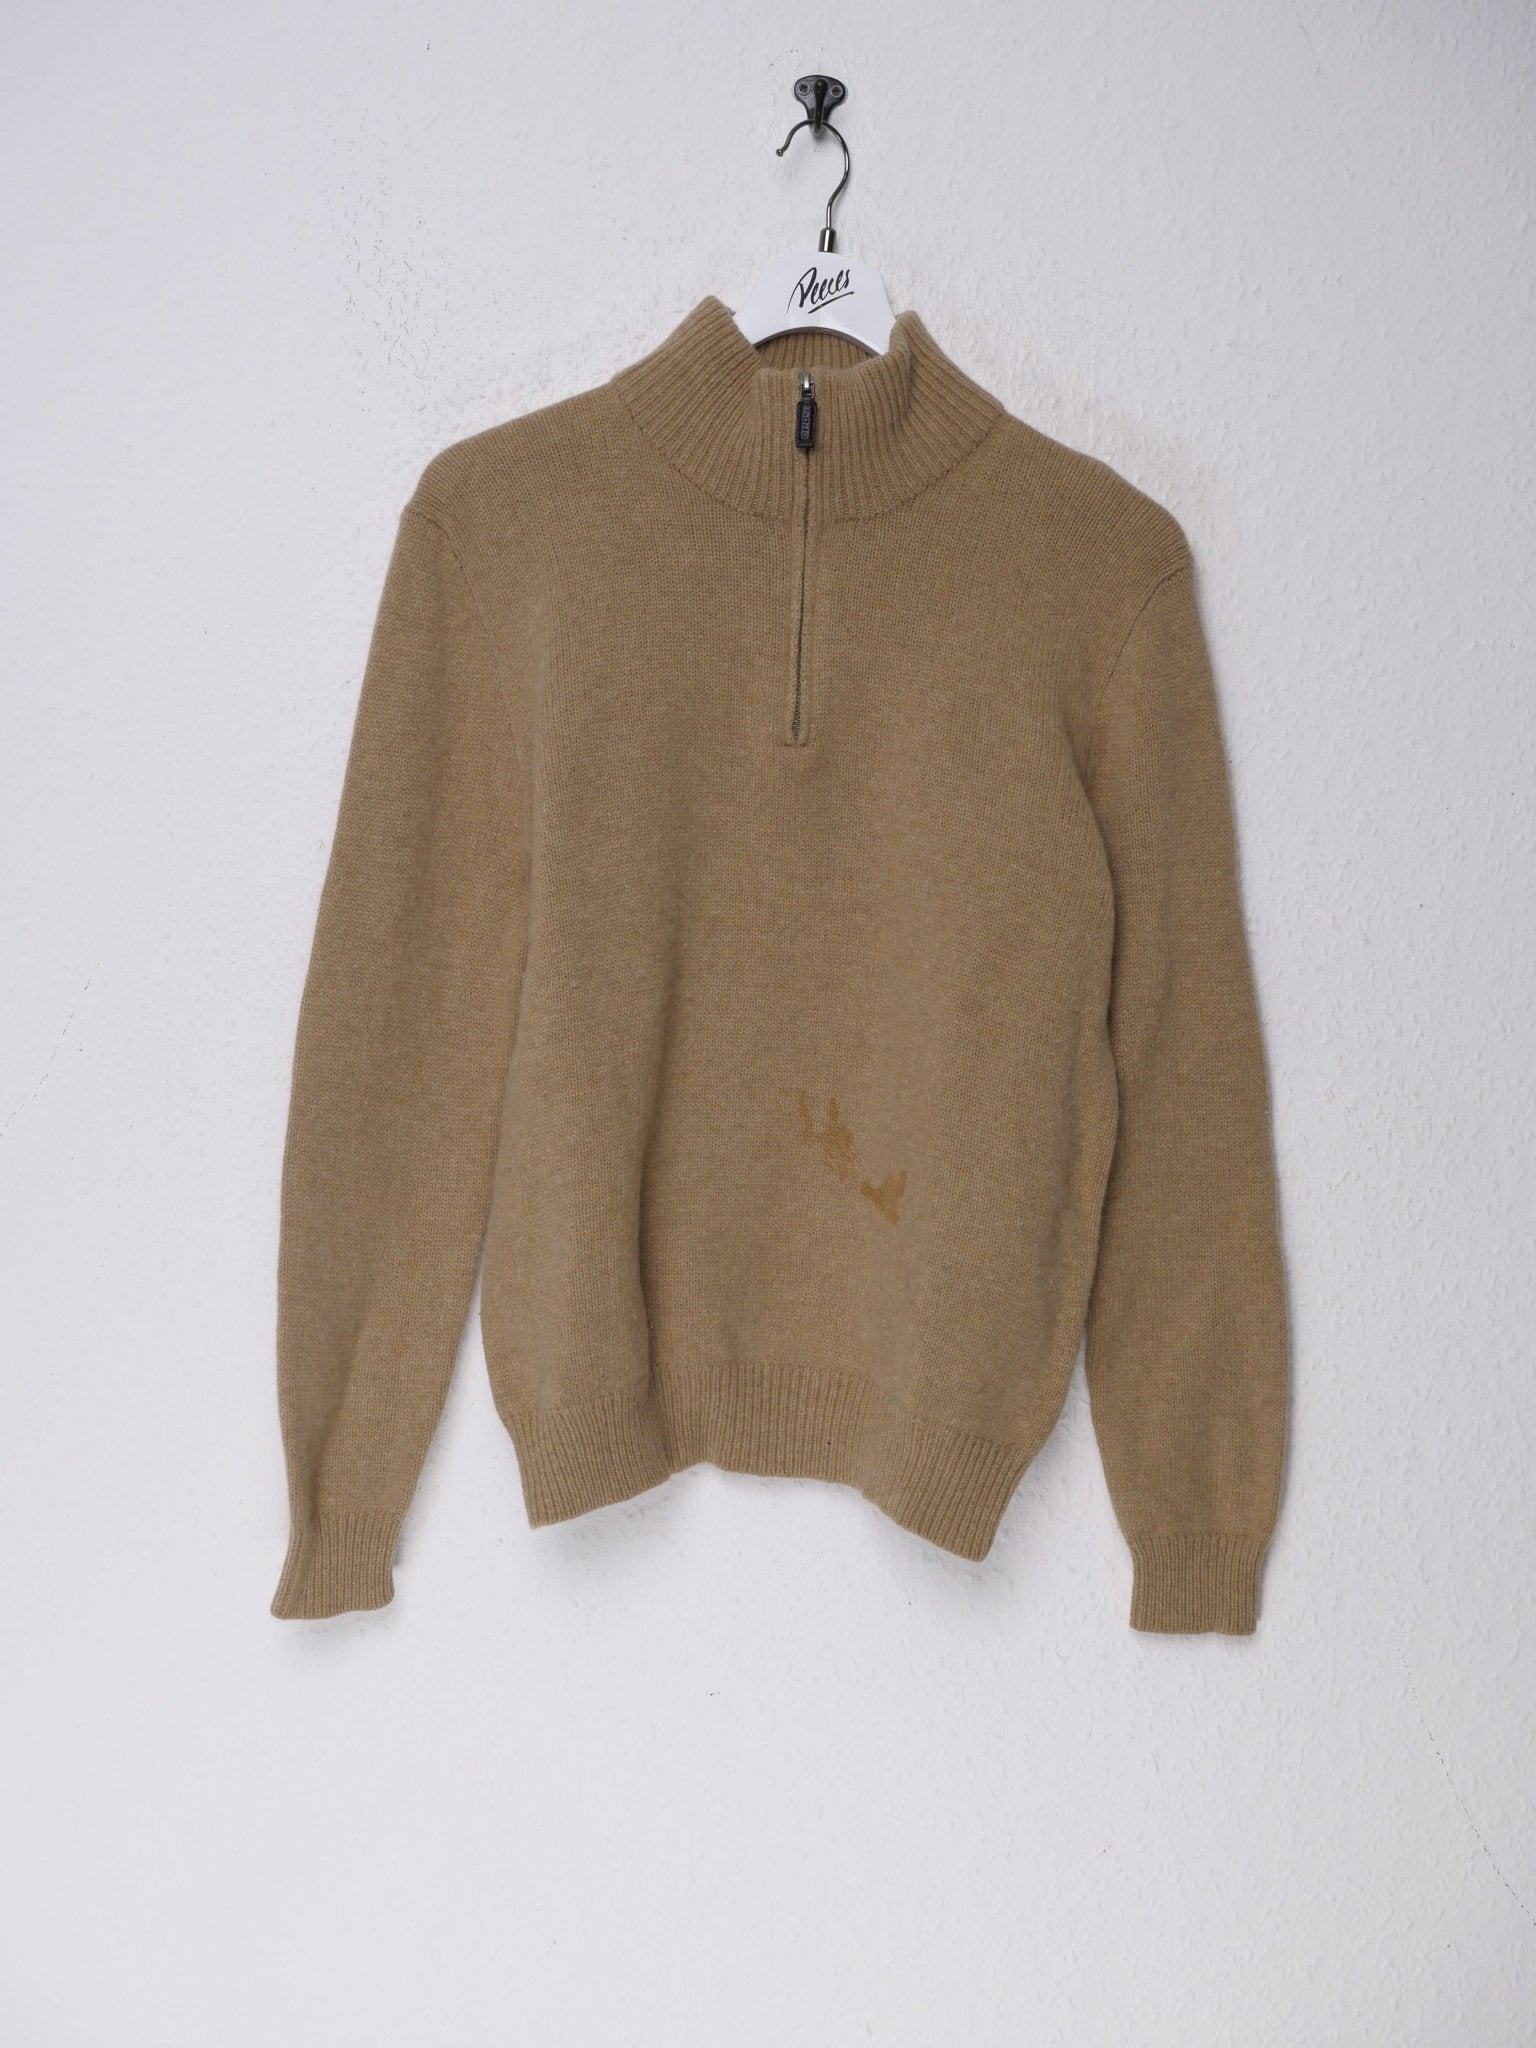 Vintage 90s Chaps Ralph Lauren Half Zip Sweater 